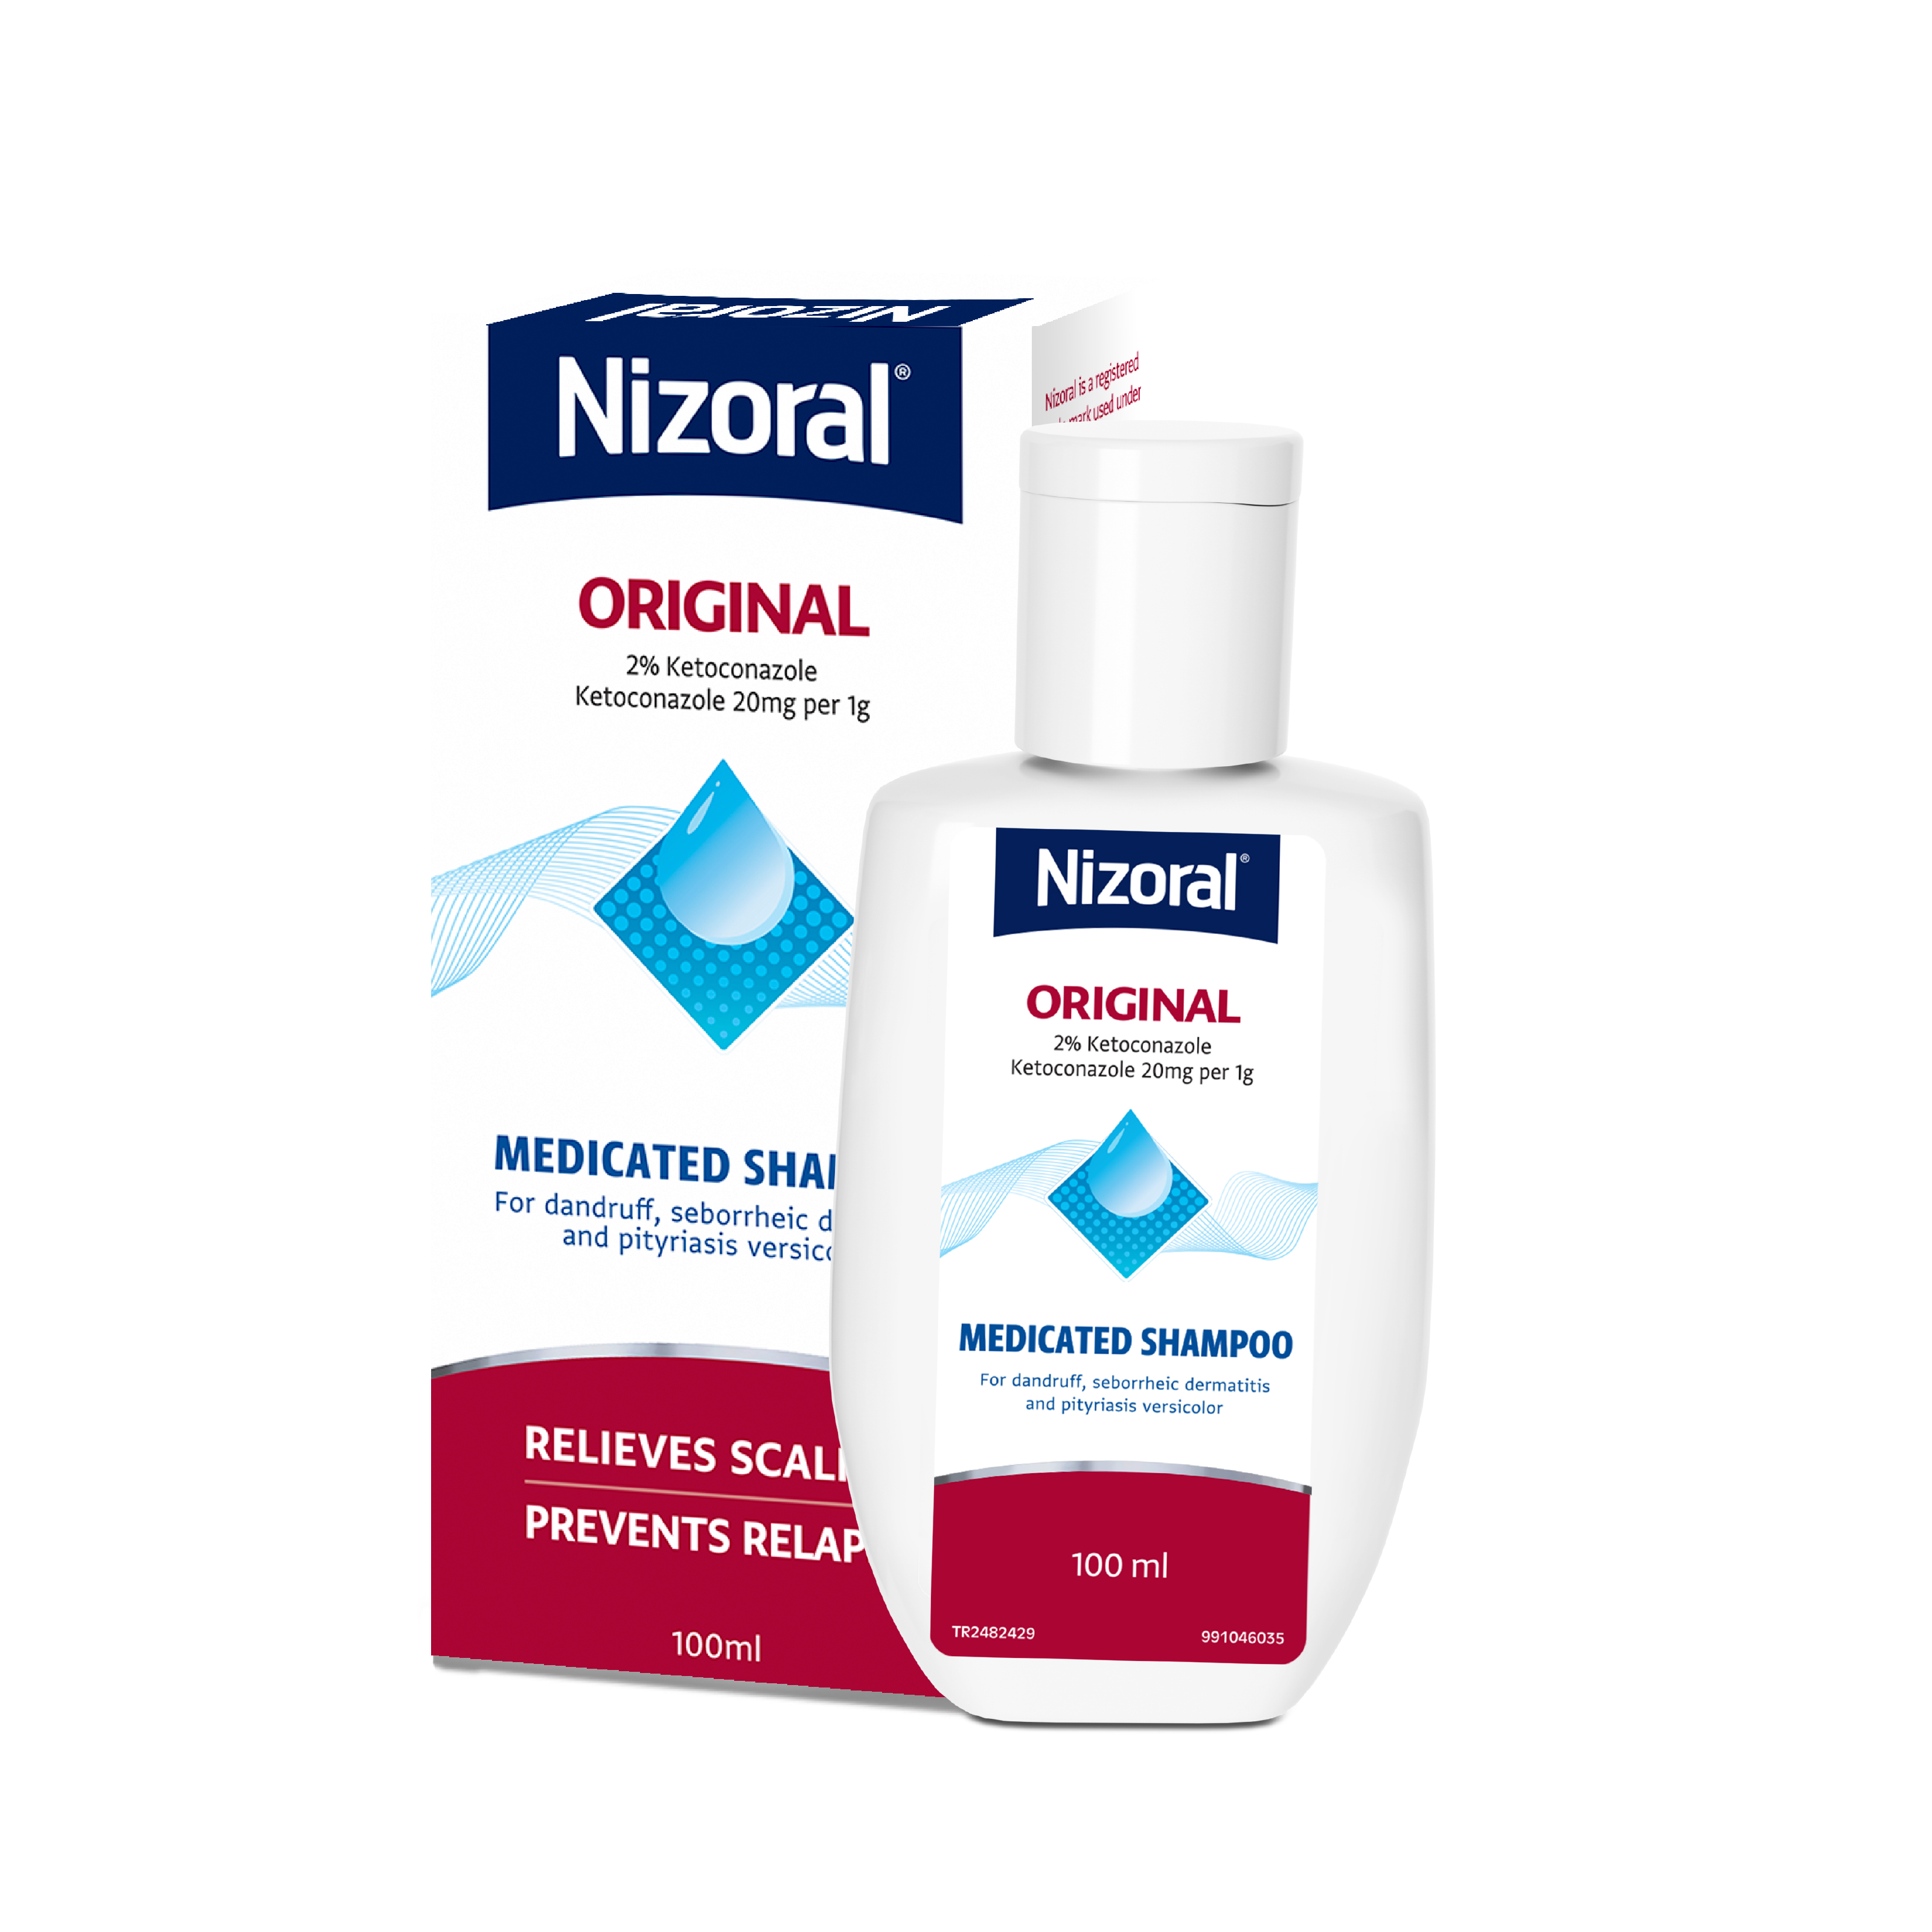 Nizoral-shampoo-100ml